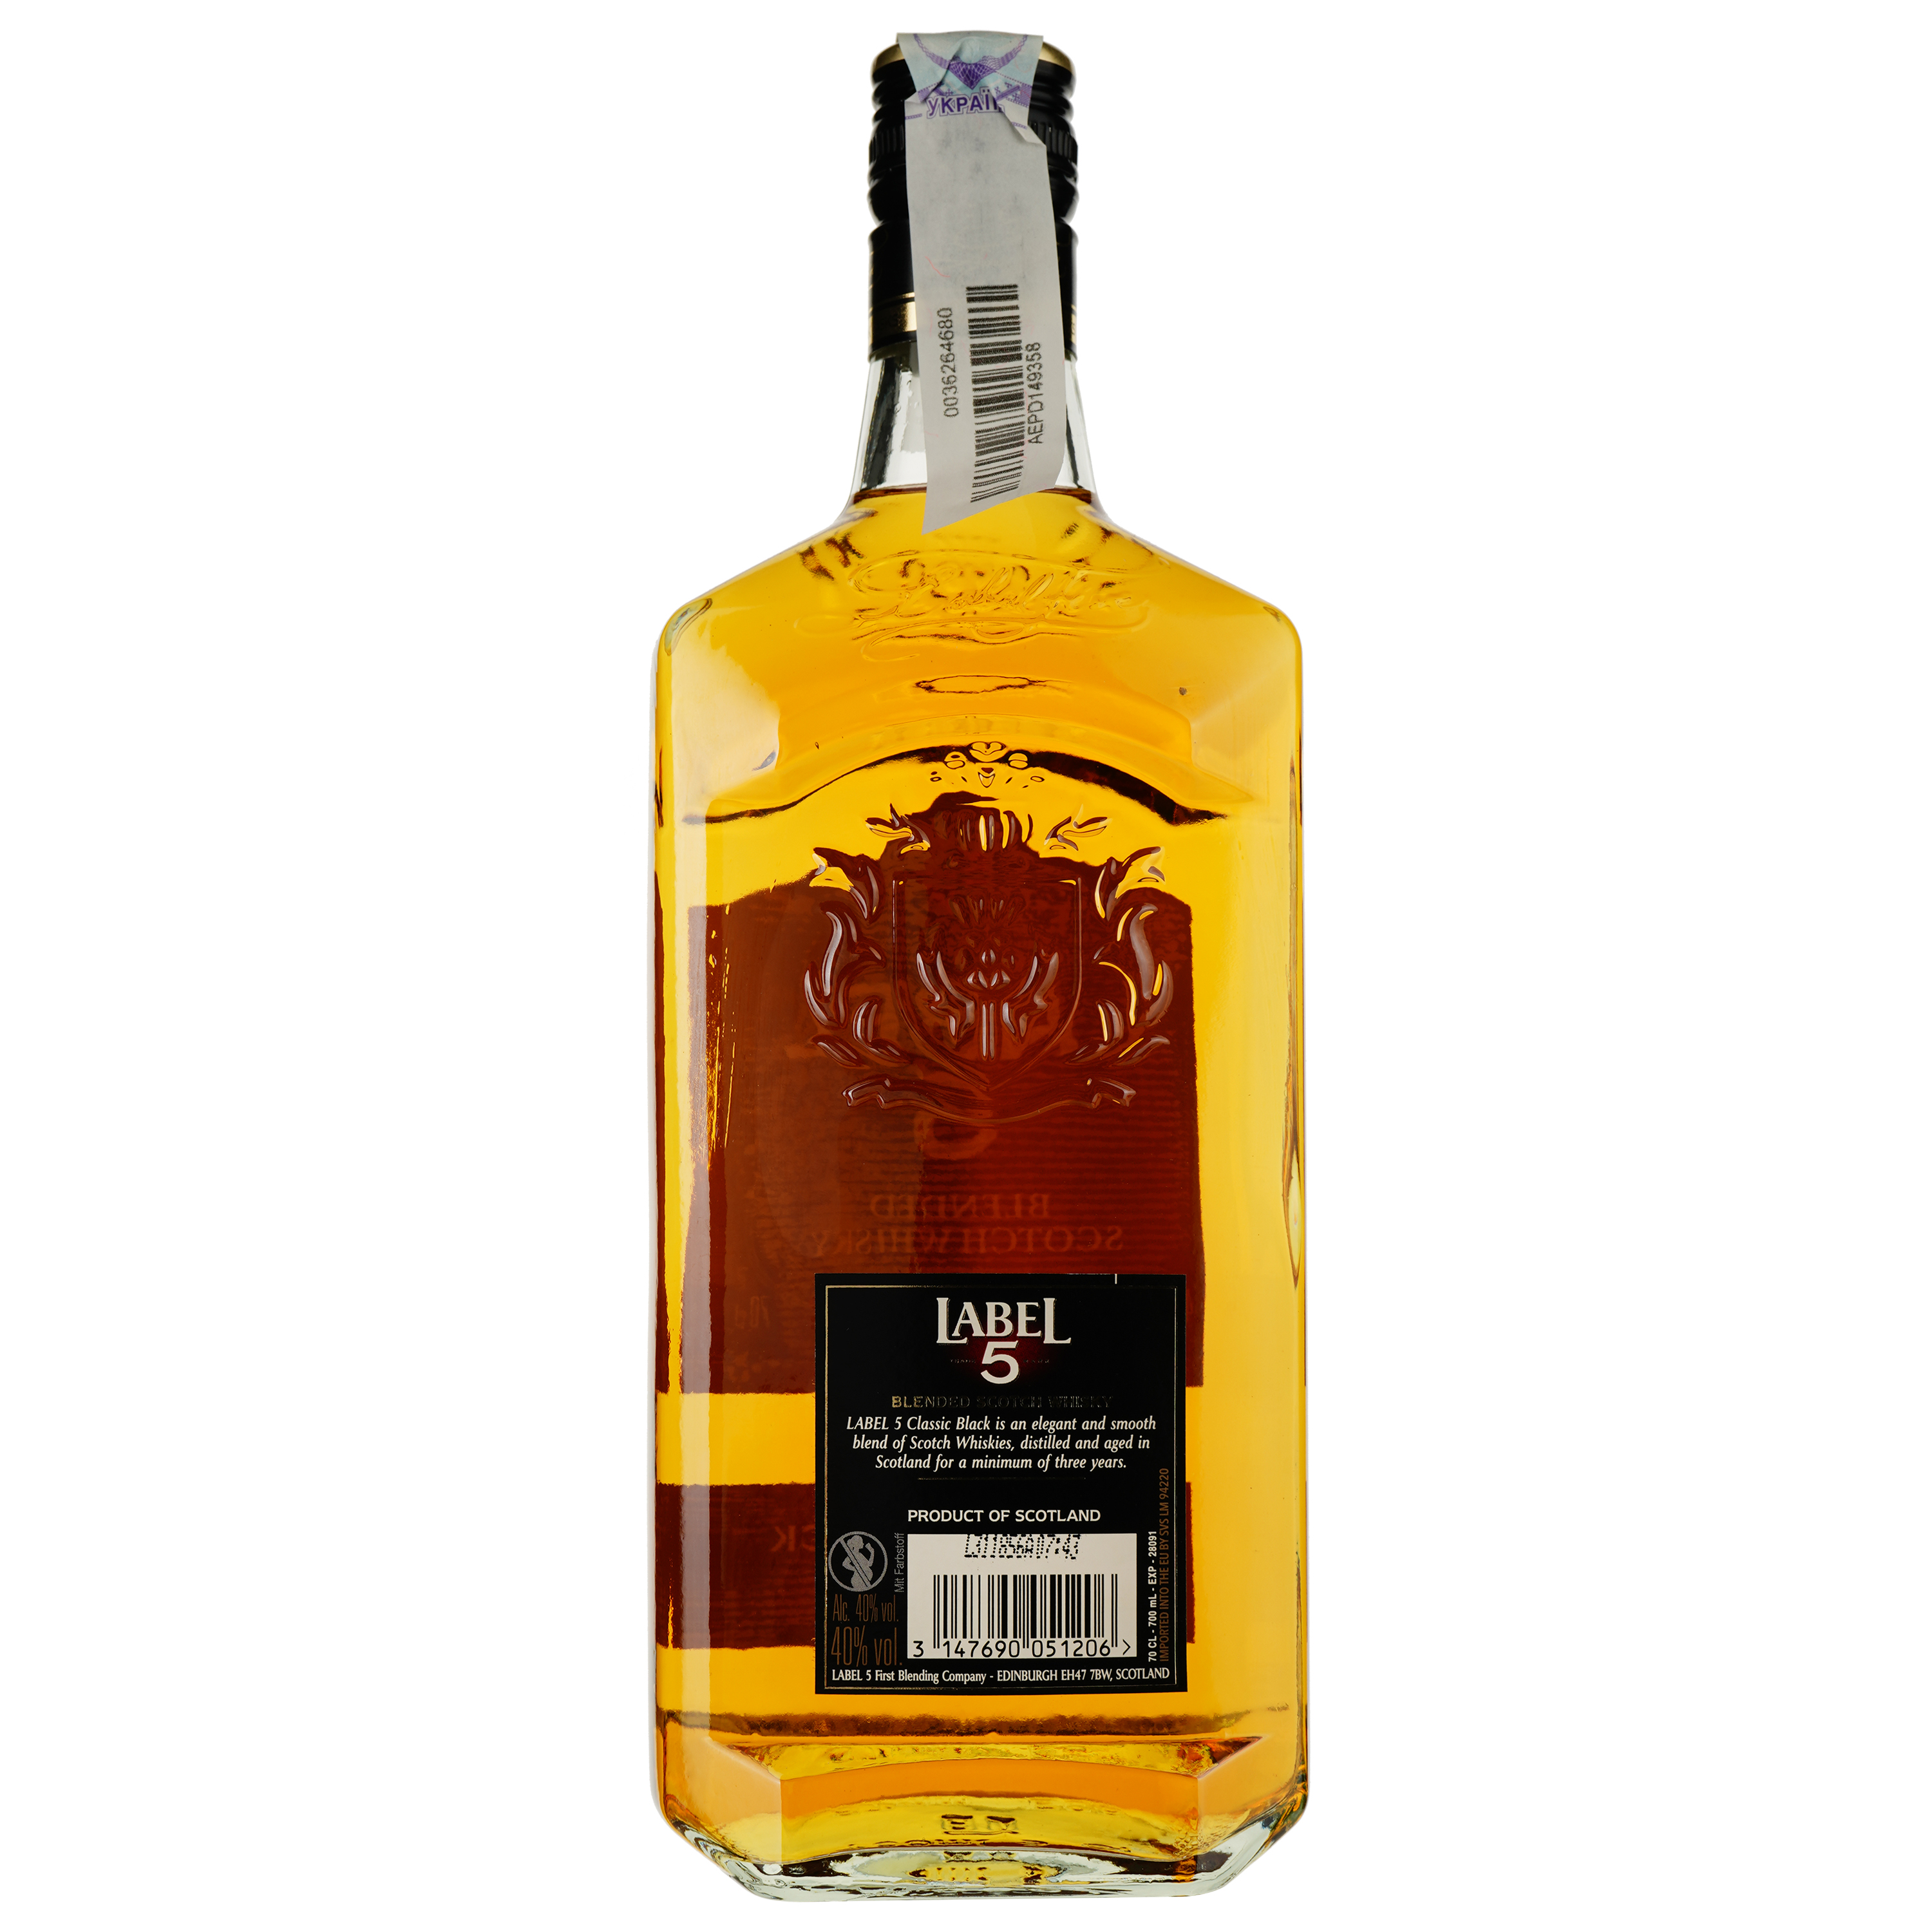 Виски Label 5 Classic Black Blended Scotch Whisky 40% 0.7 л - фото 2